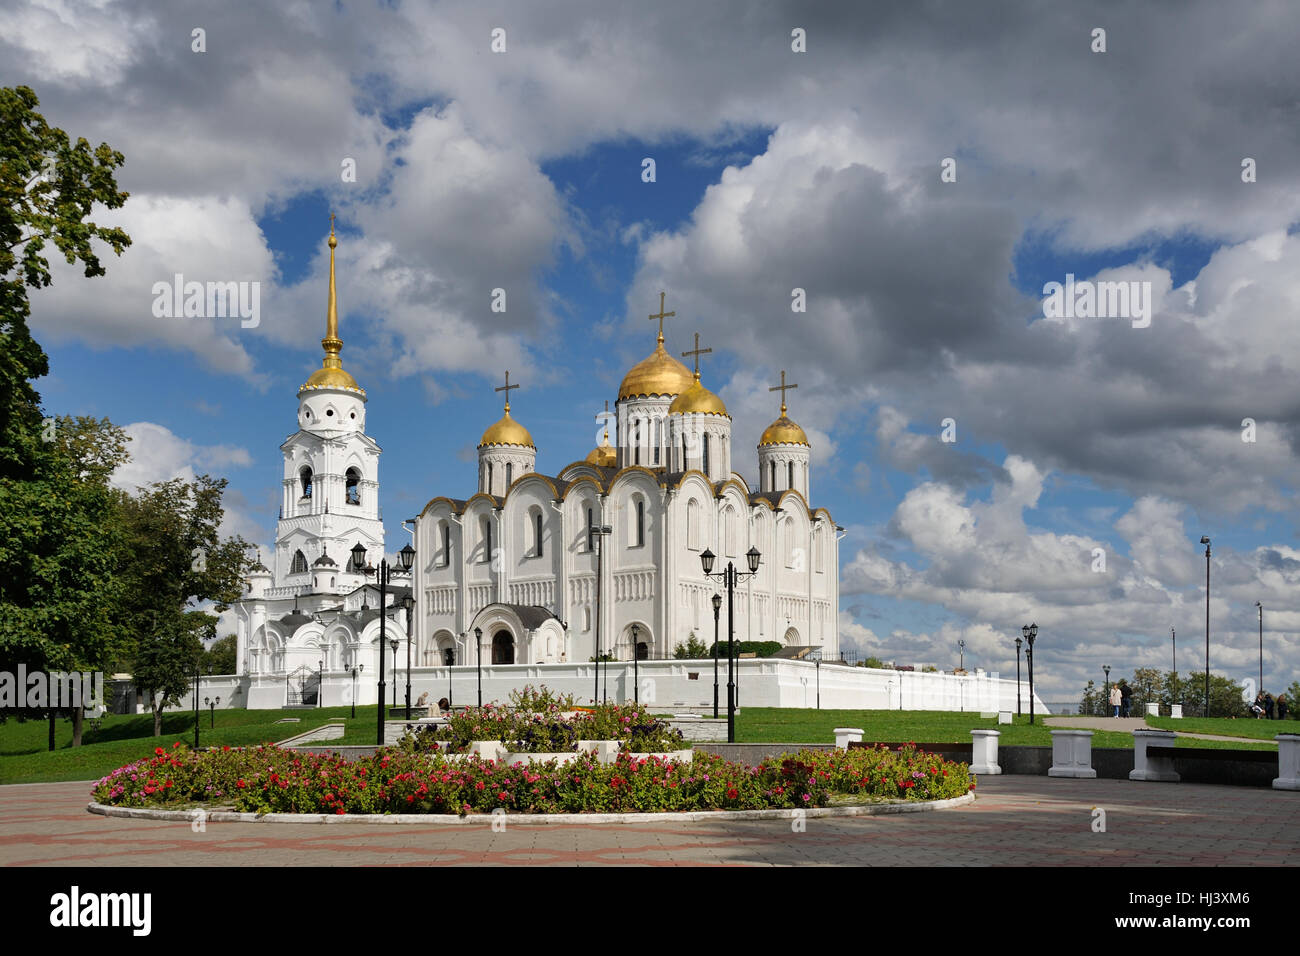 Complesso architettonico dell'antica cattedrale dell Assunzione sotto un cielo Cloud-Filled. Vladimir, Russia Foto Stock